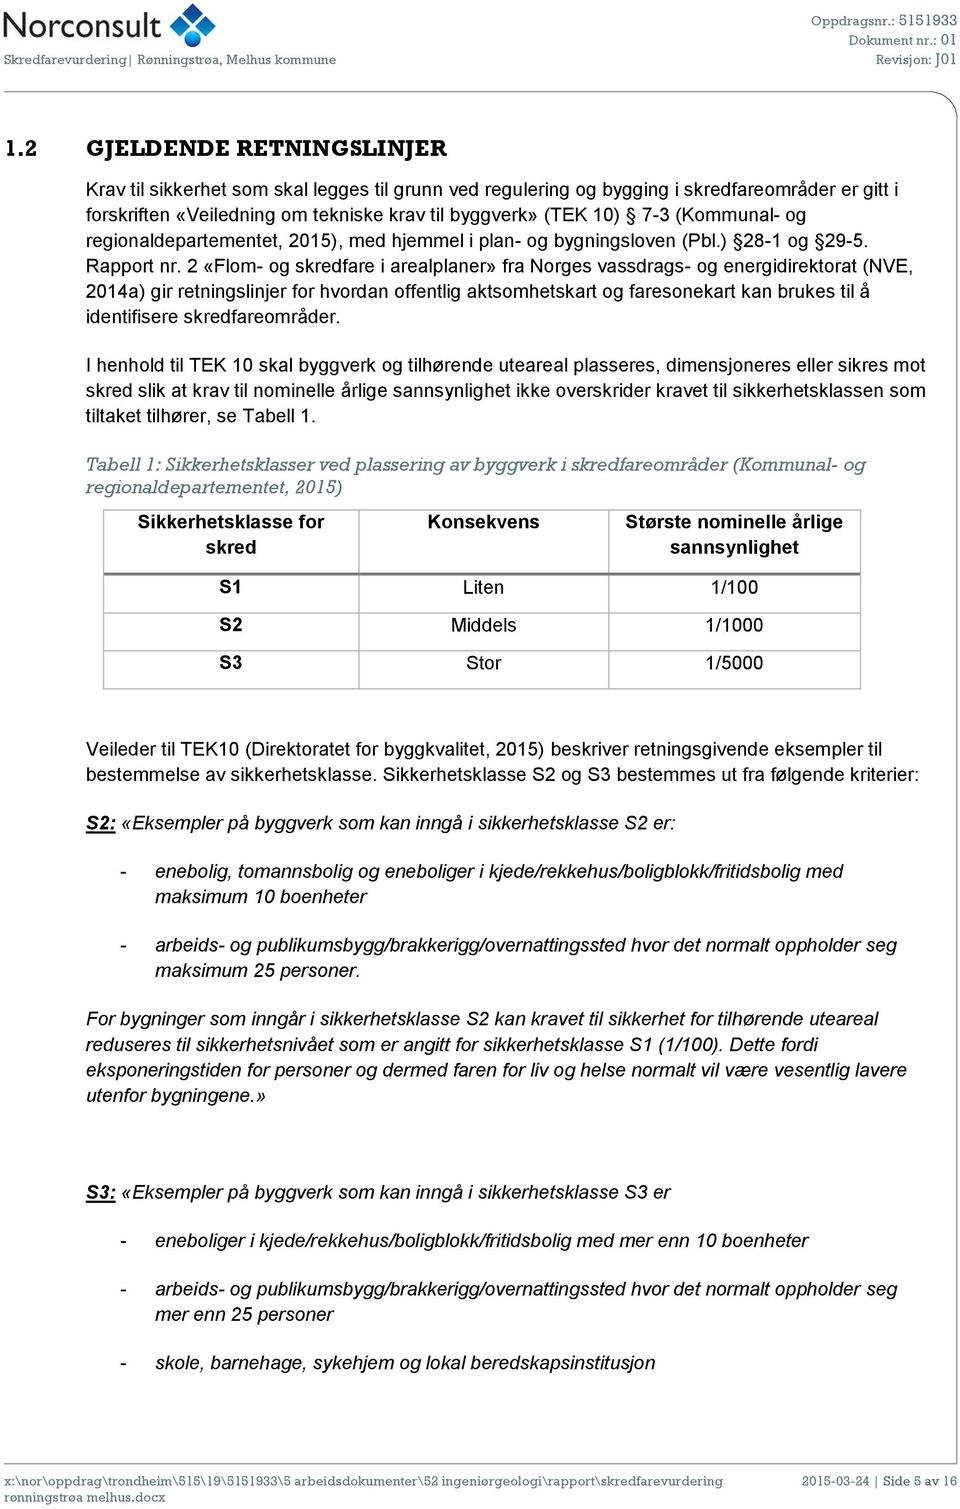 2 «Flom- og skredfare i arealplaner» fra Norges vassdrags- og energidirektorat (NVE, 2014a) gir retningslinjer for hvordan offentlig aktsomhetskart og faresonekart kan brukes til å identifisere